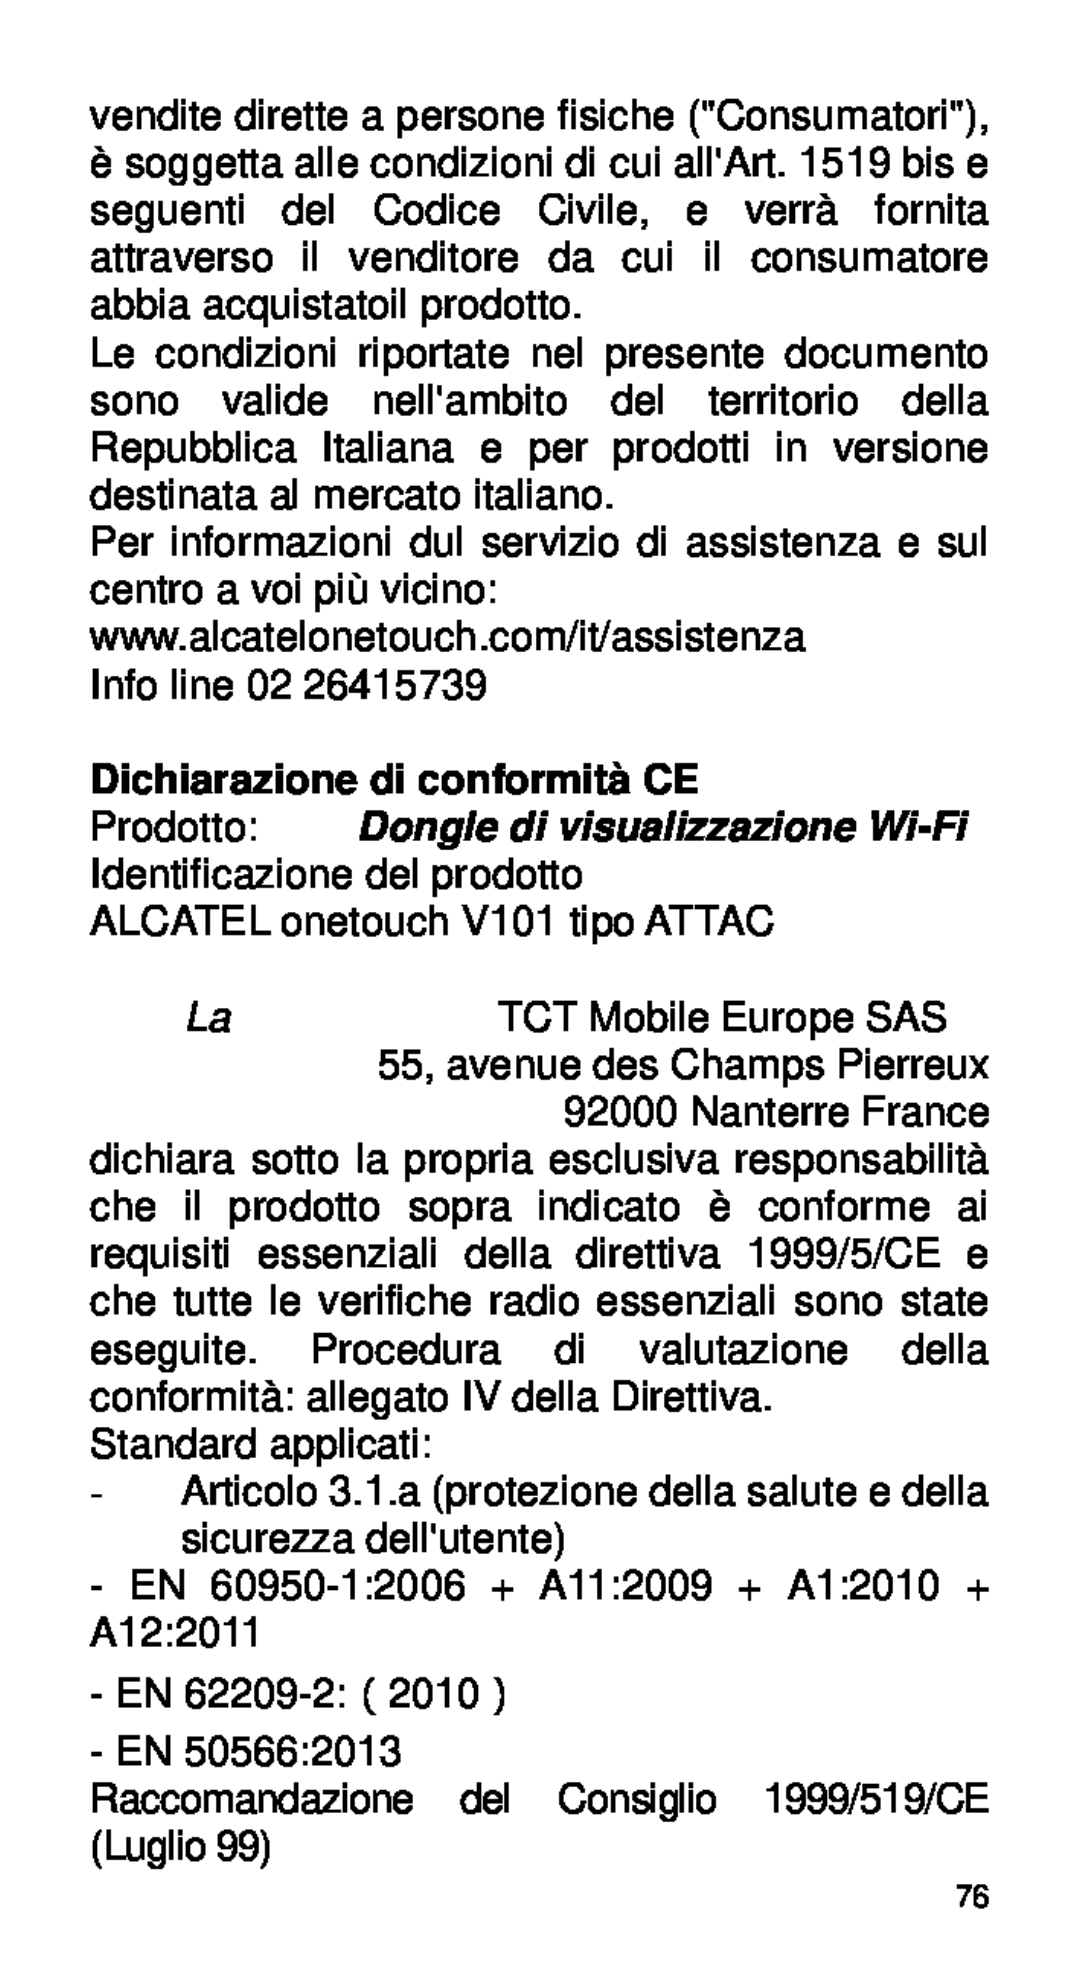 Alcatel Home V101 Prodotto Dongle di visualizzazione Wi-Fi Identificazione del prodotto, Dichiarazione di conformità CE 